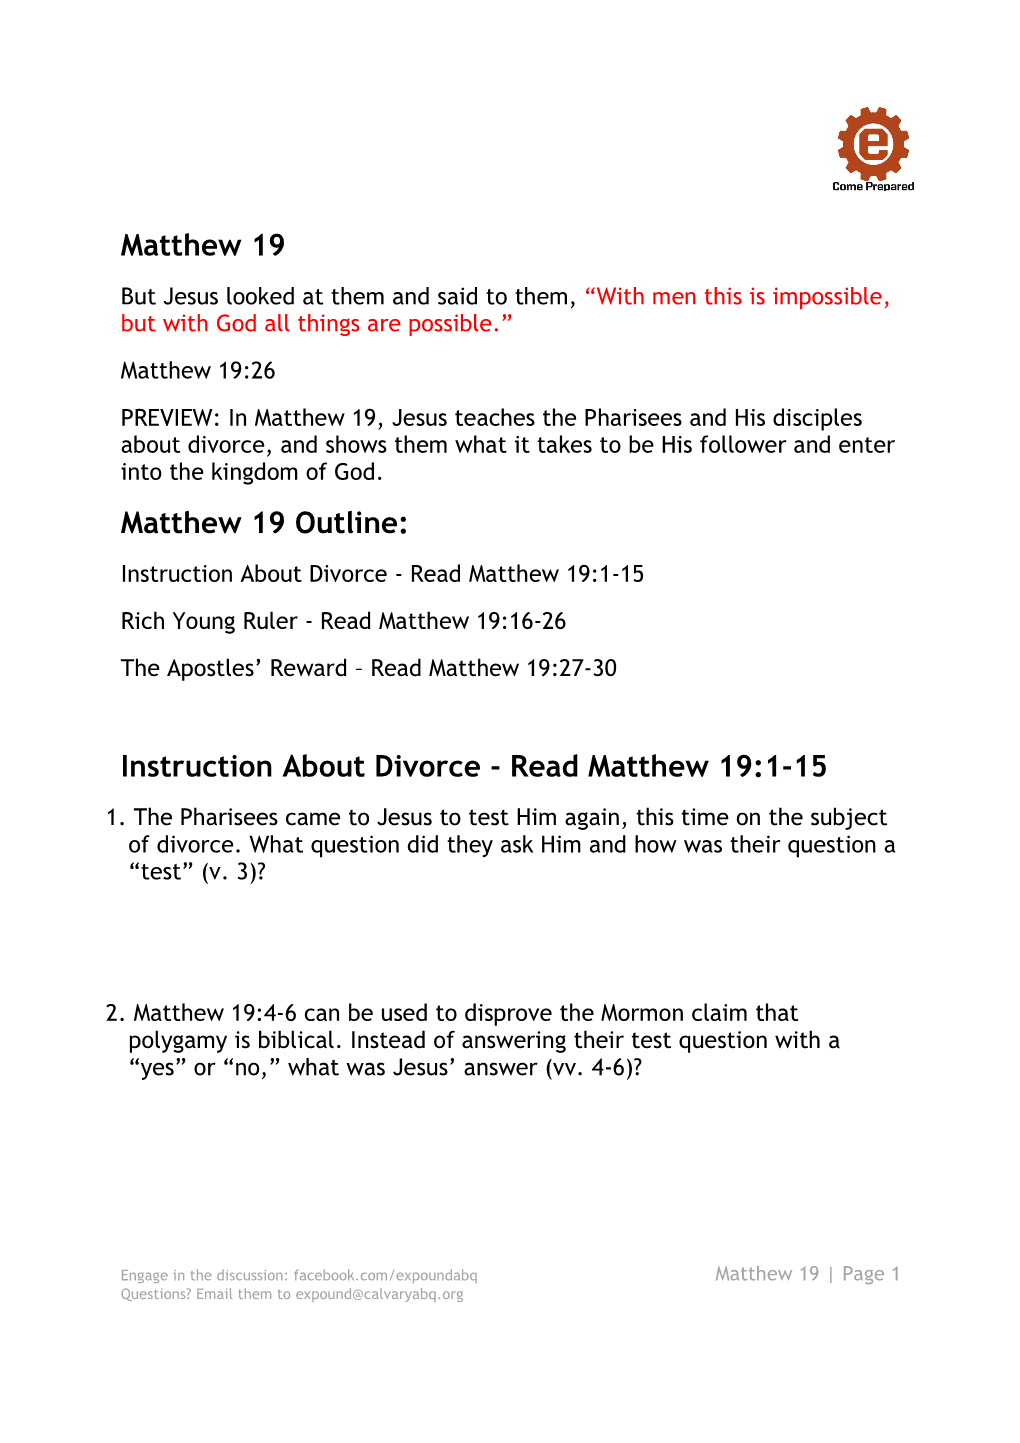 Matthew 19 Study Guide Handout